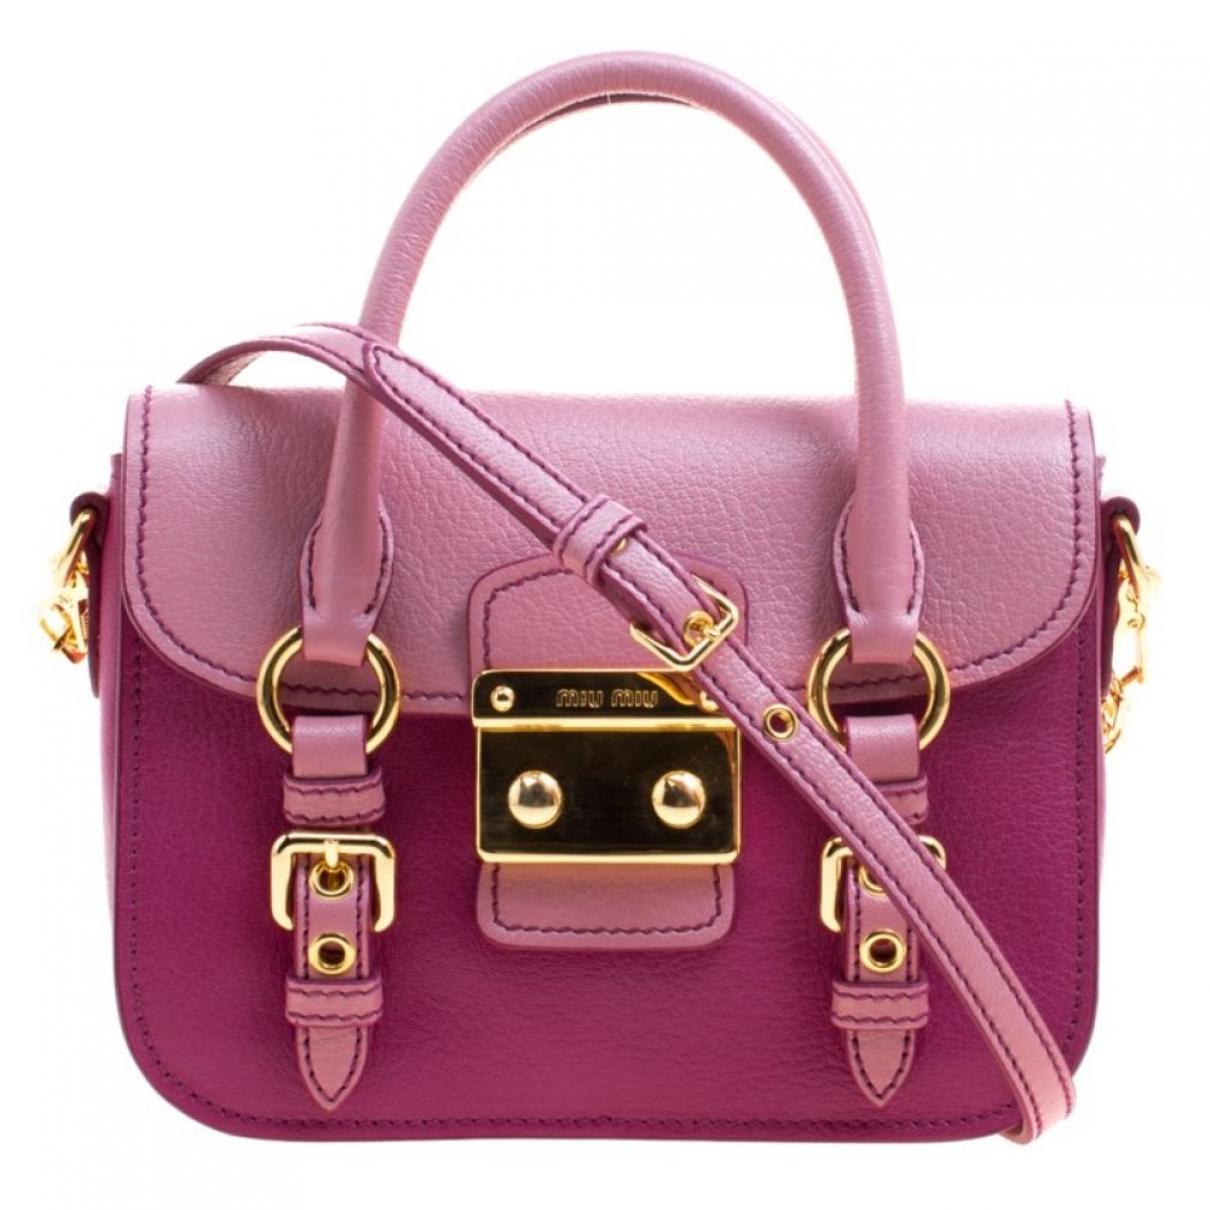 Miu Miu Handbags Cost | semashow.com